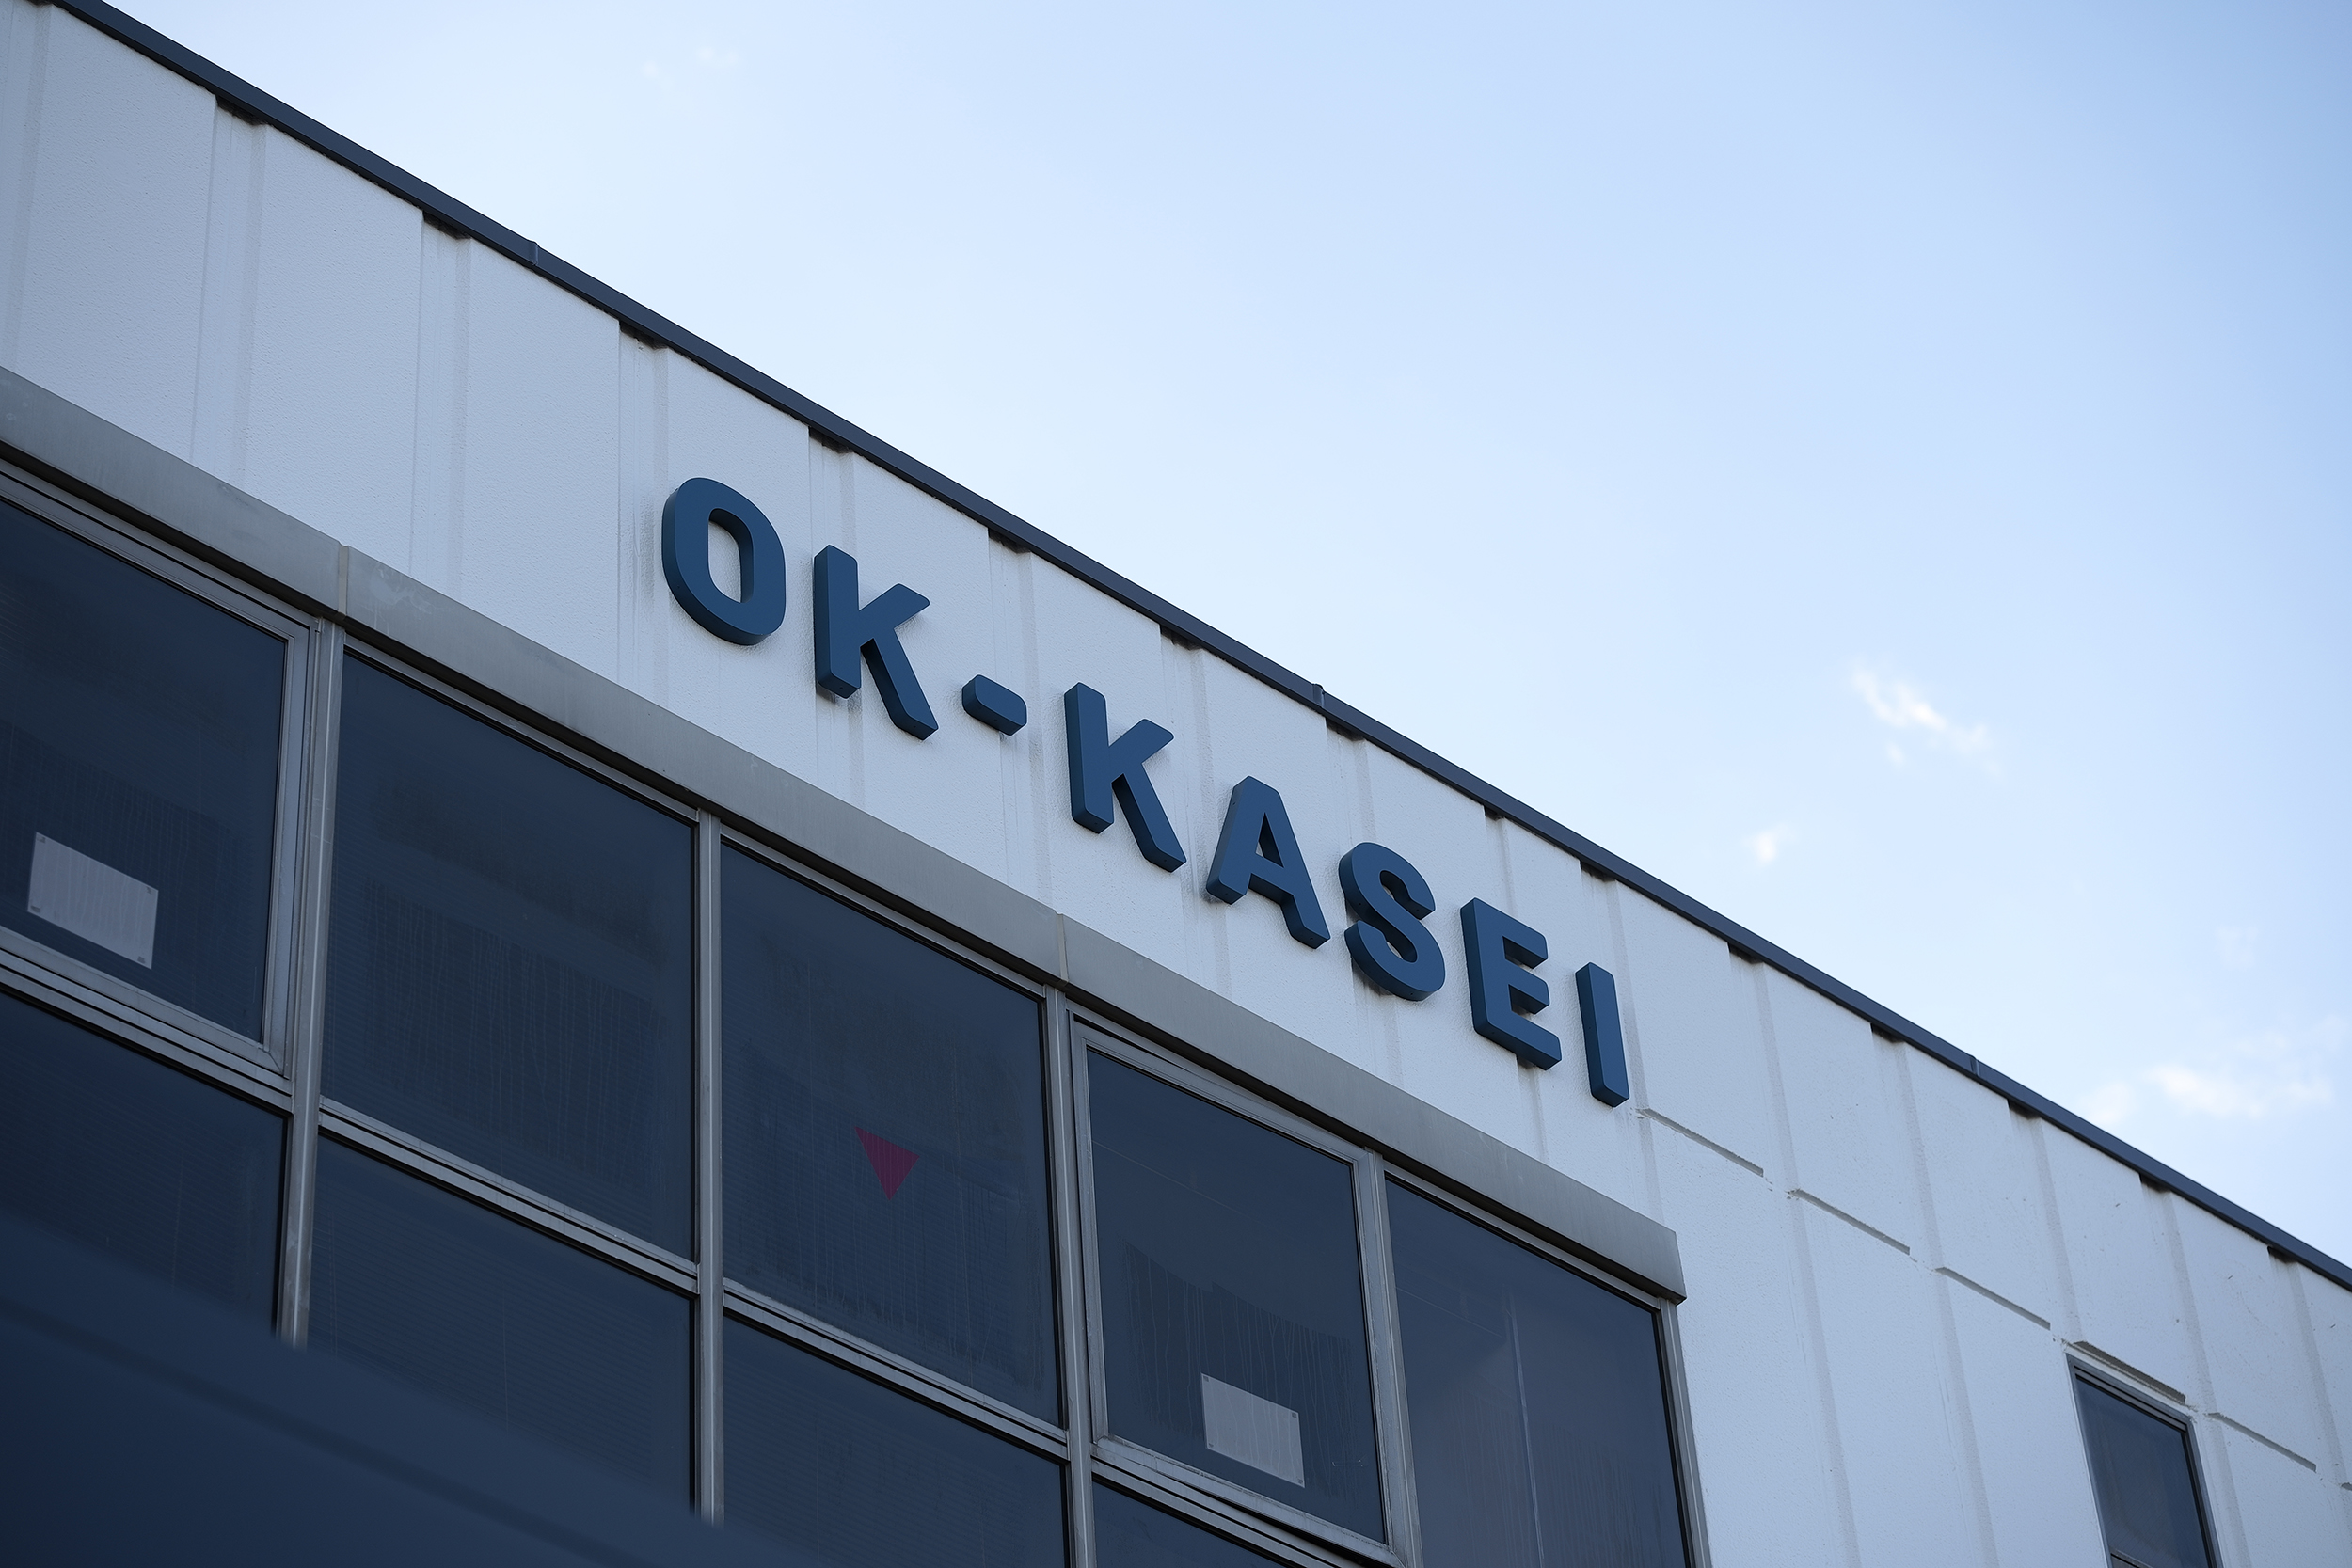 OK-KASEI VI Project